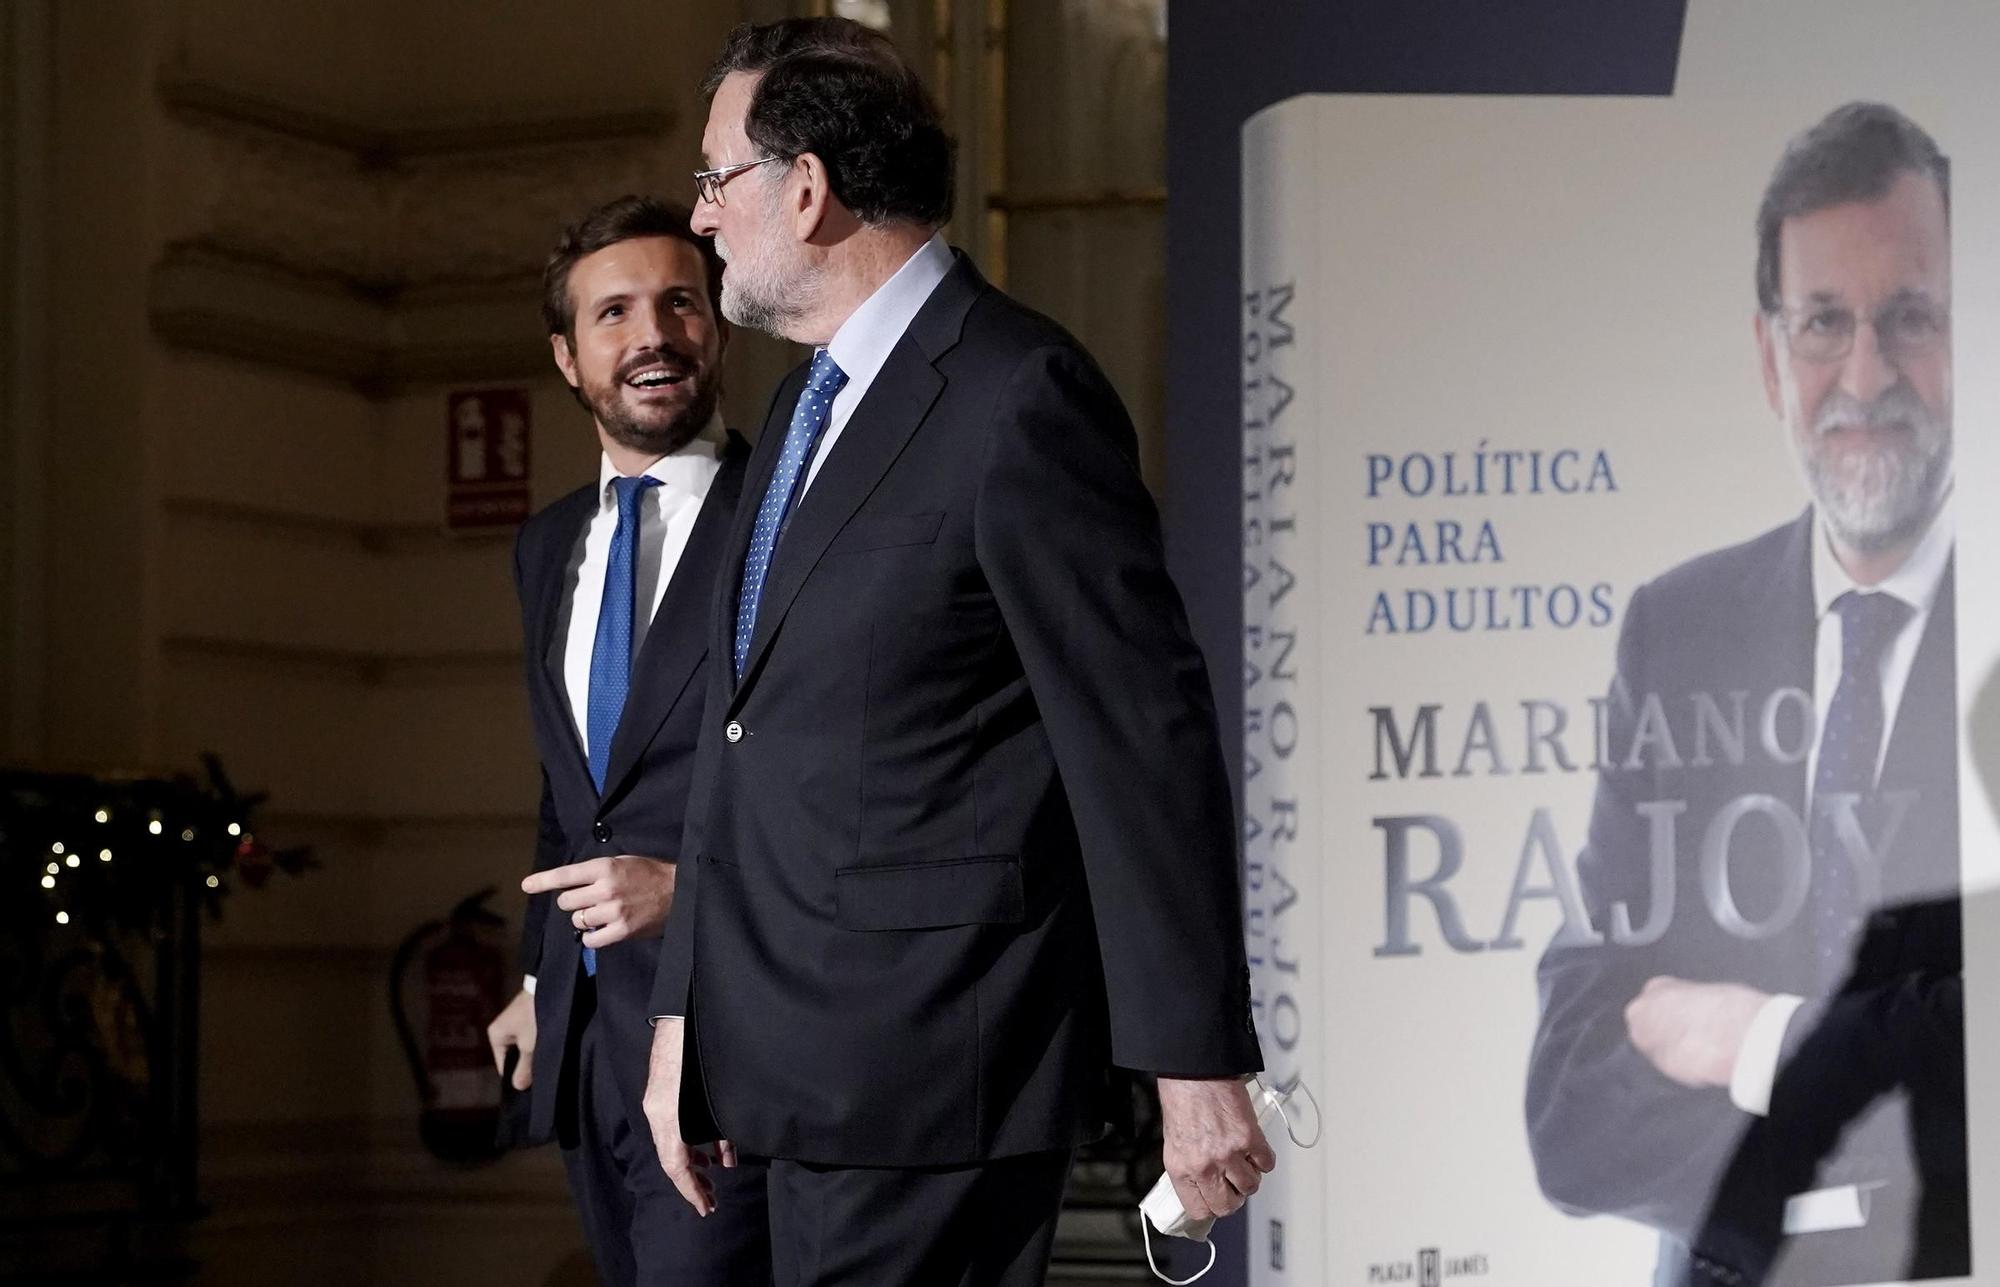 Pablo Casado e Isabel Díaz Ayuso, en la presentación del libro de Mariano Rajoy 'Política para adultos'